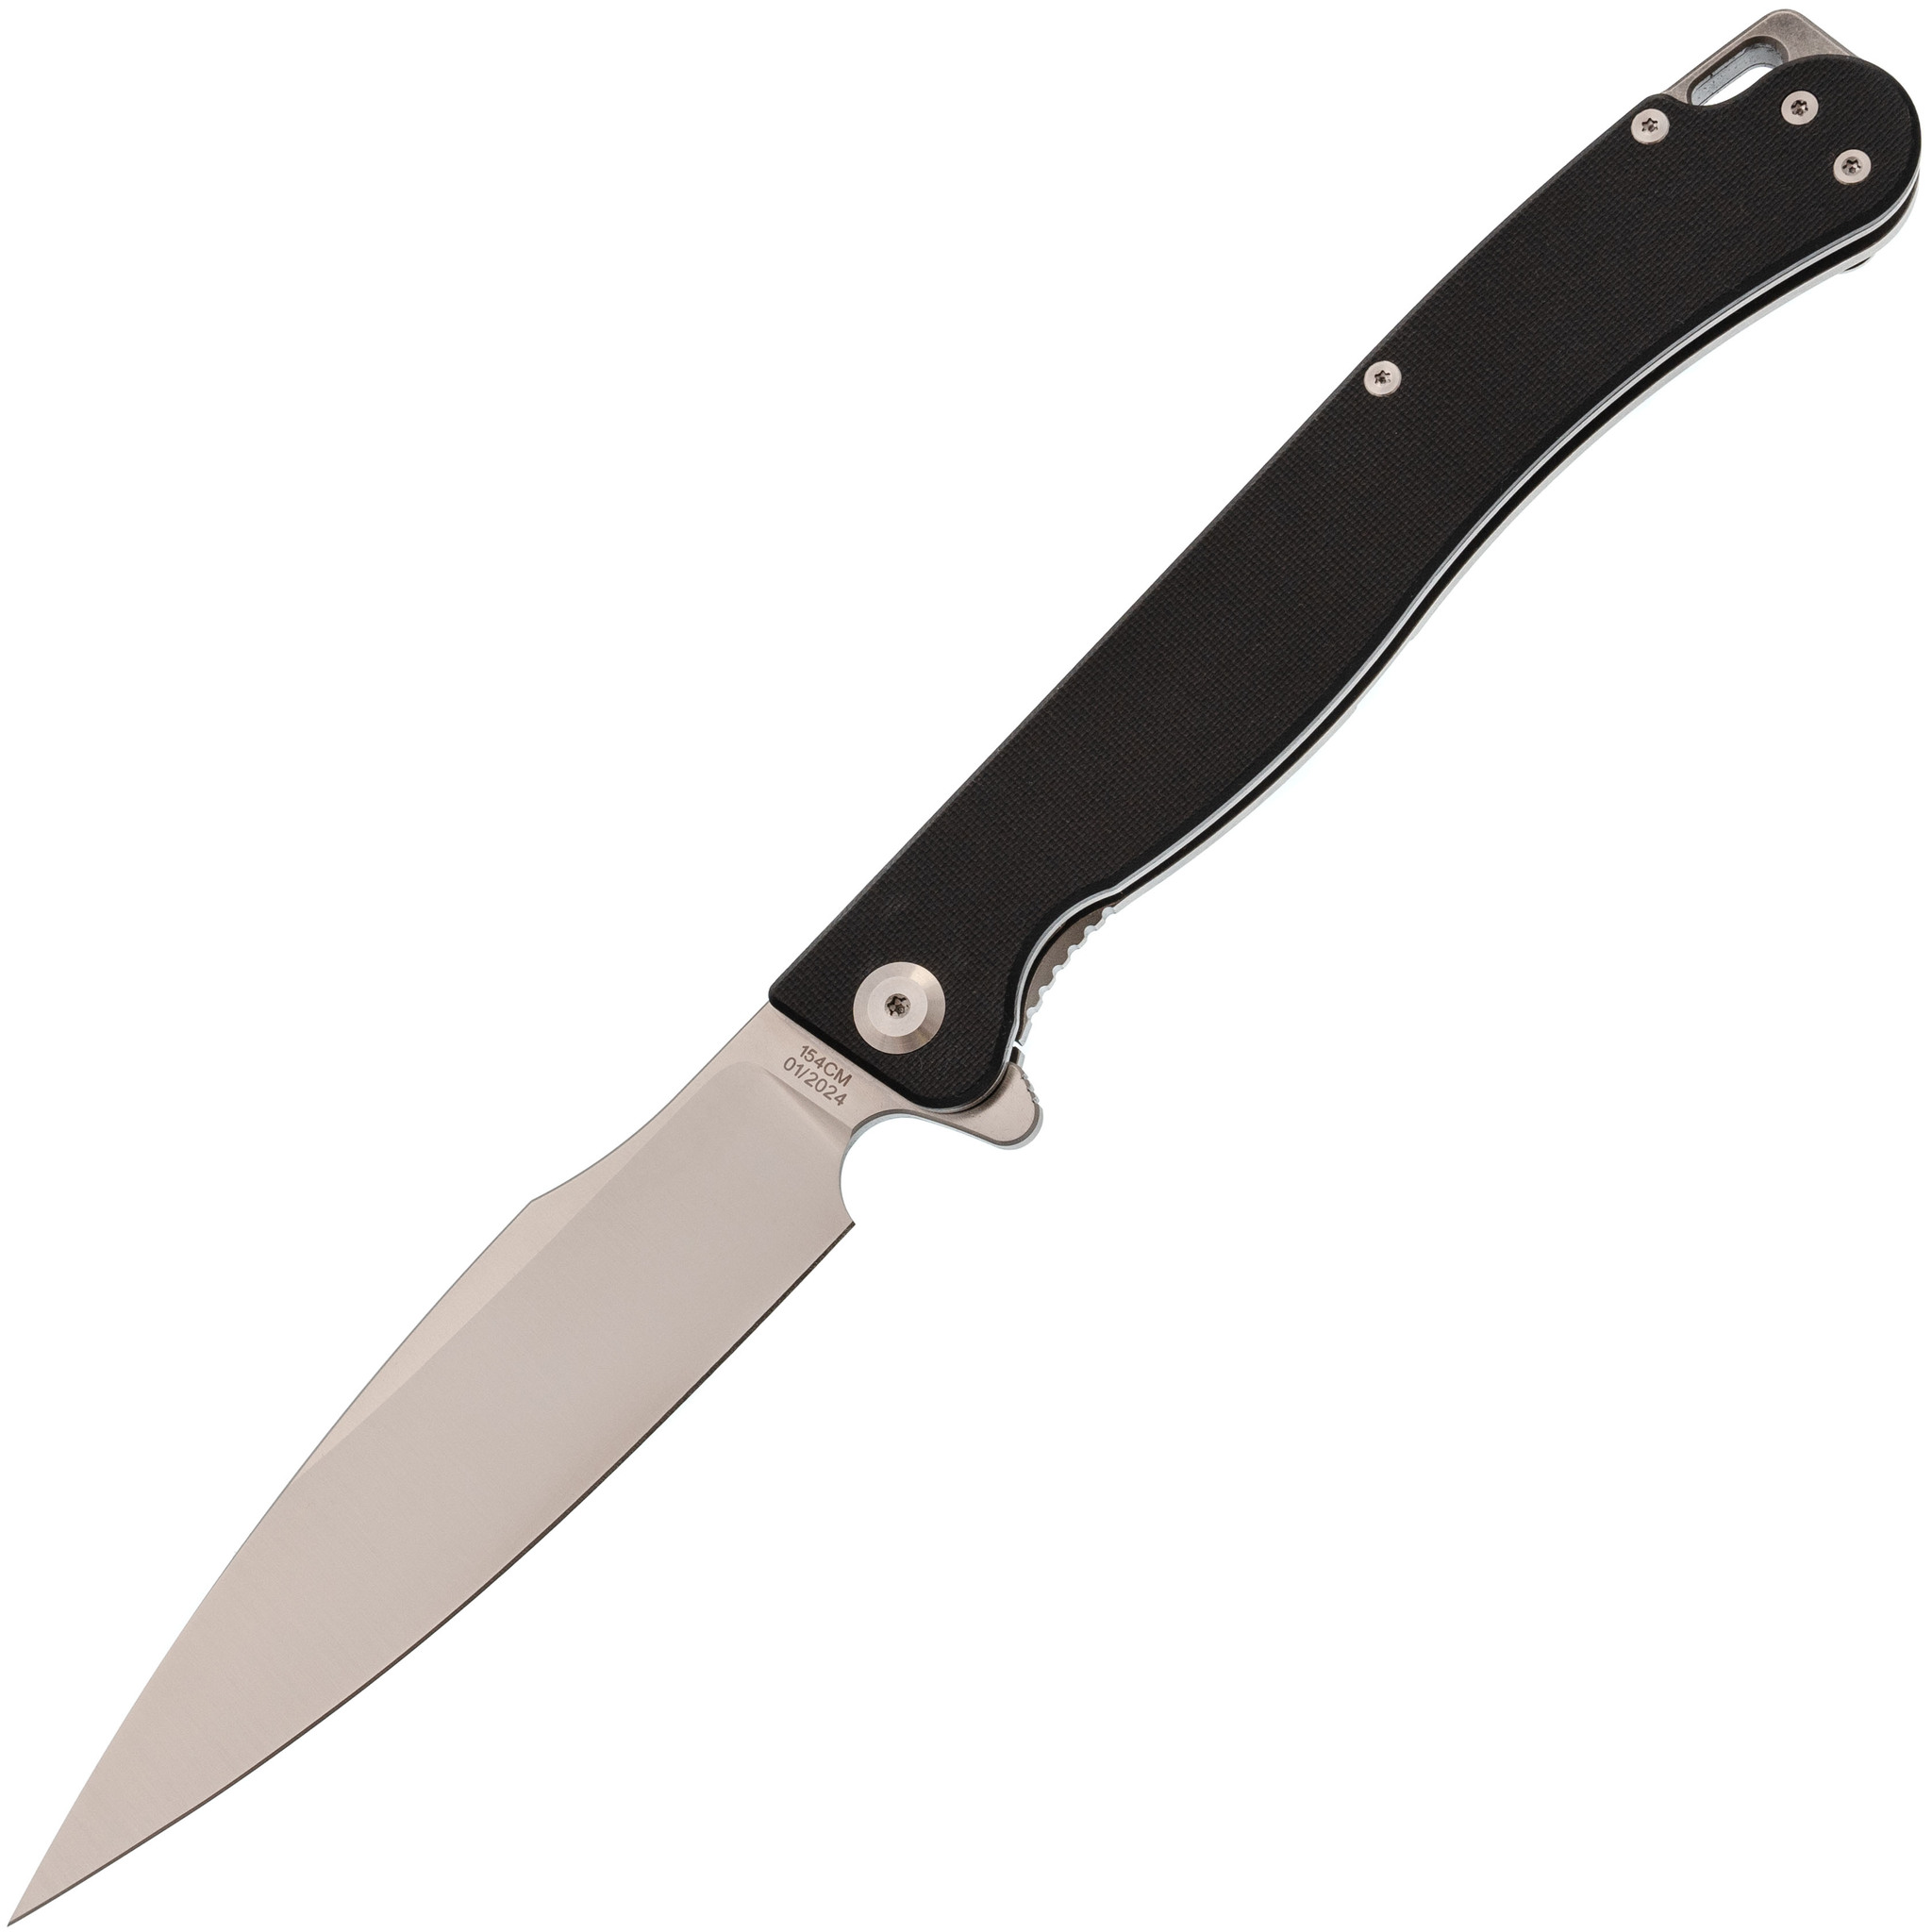 Складной нож Daggerr Condor Black Satin, сталь 154CM, рукоять G10 - фото 1